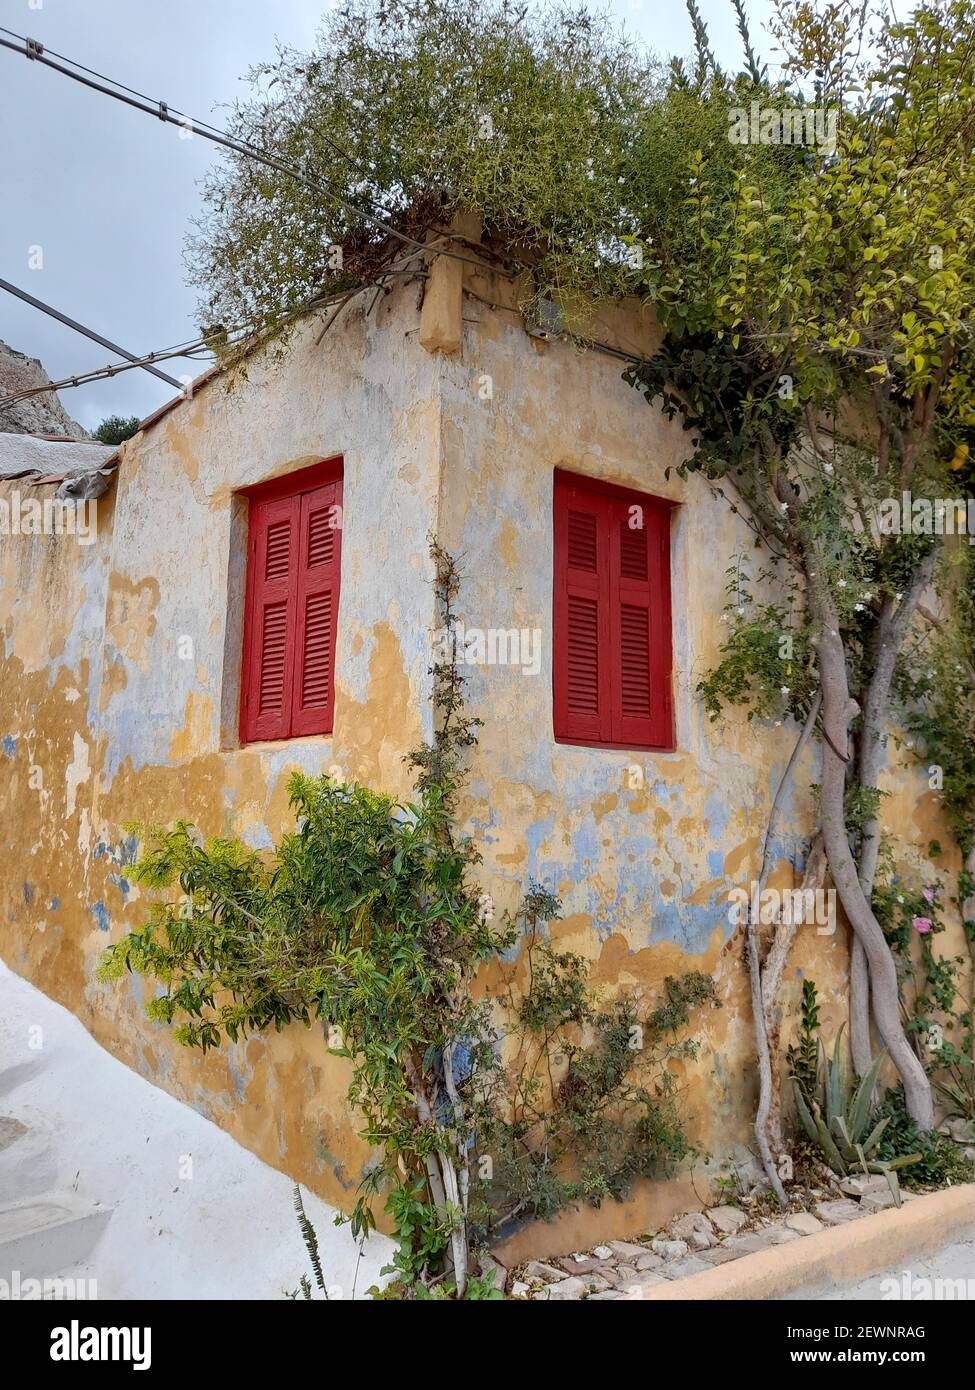 Muro colorato invecchiato di una vecchia casa nel pittoresco quartiere di Anafiotika, a Plaka, la città vecchia di Atene, capitale della Grecia, Europa Foto Stock